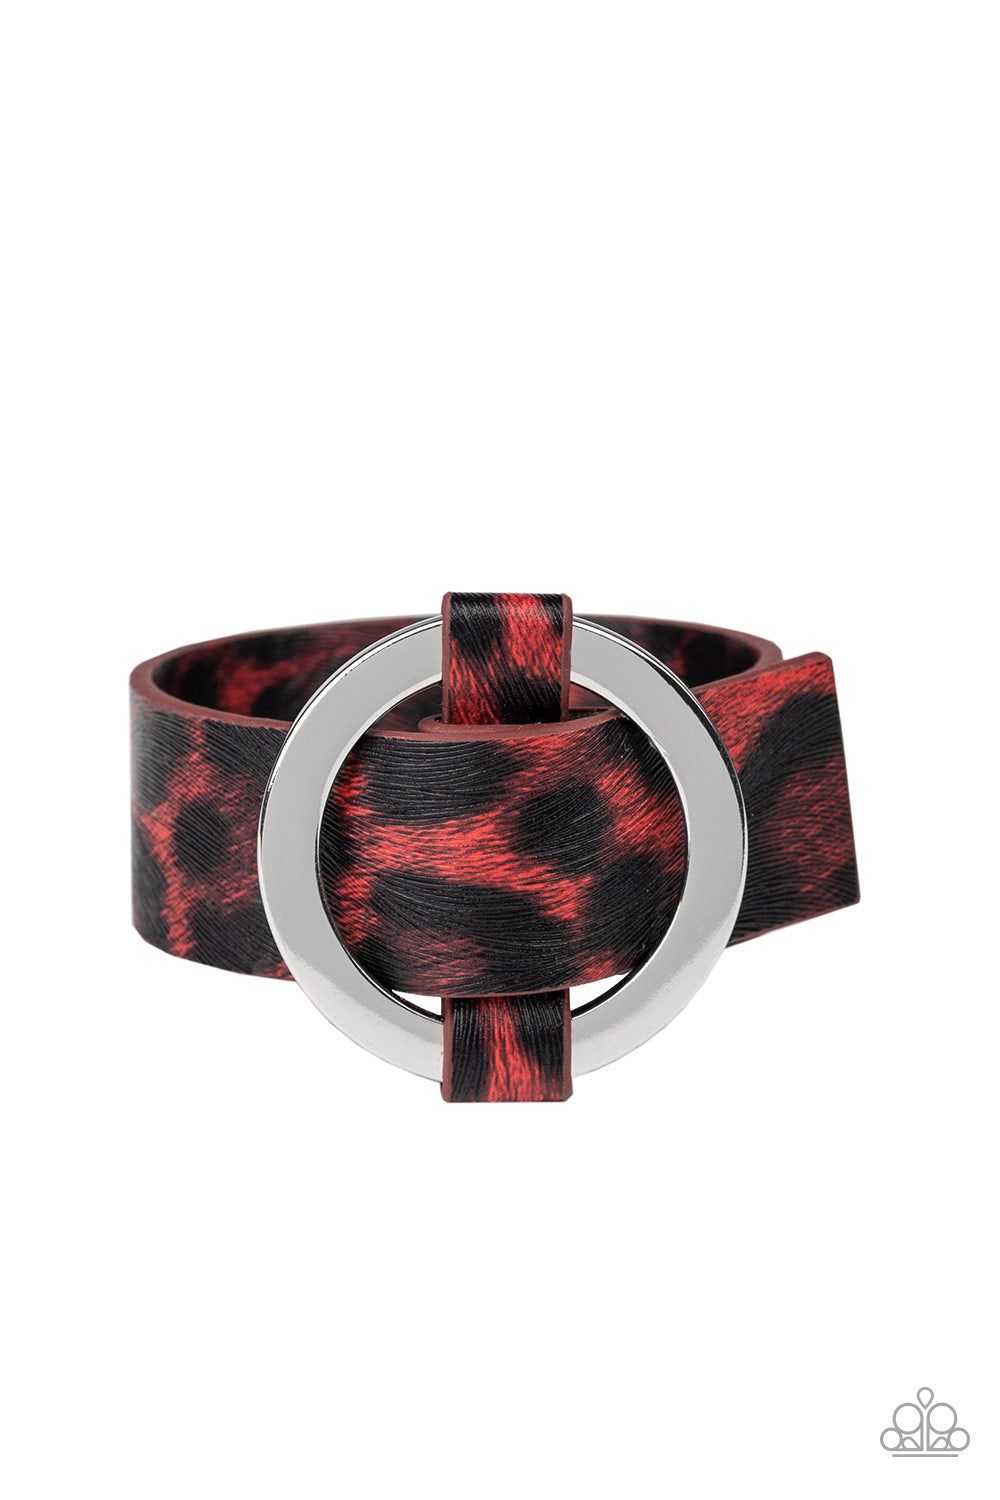 Jungle Cat Couture - Red/Black wrap bracelet